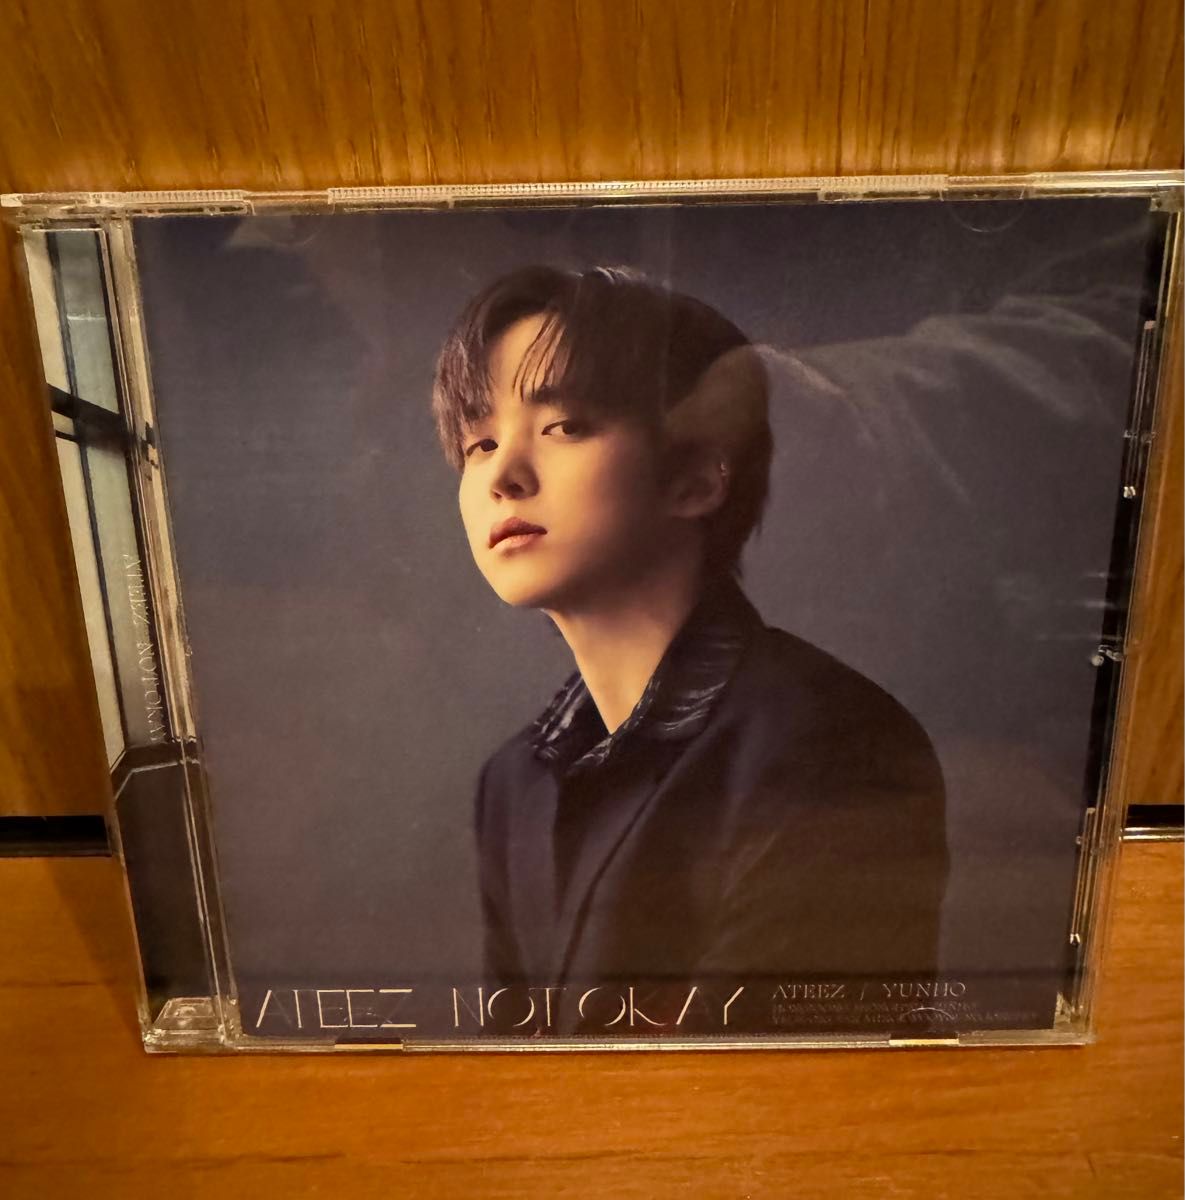 ATEEZ NOT OKAY 個別CD ユノ/ユンホ